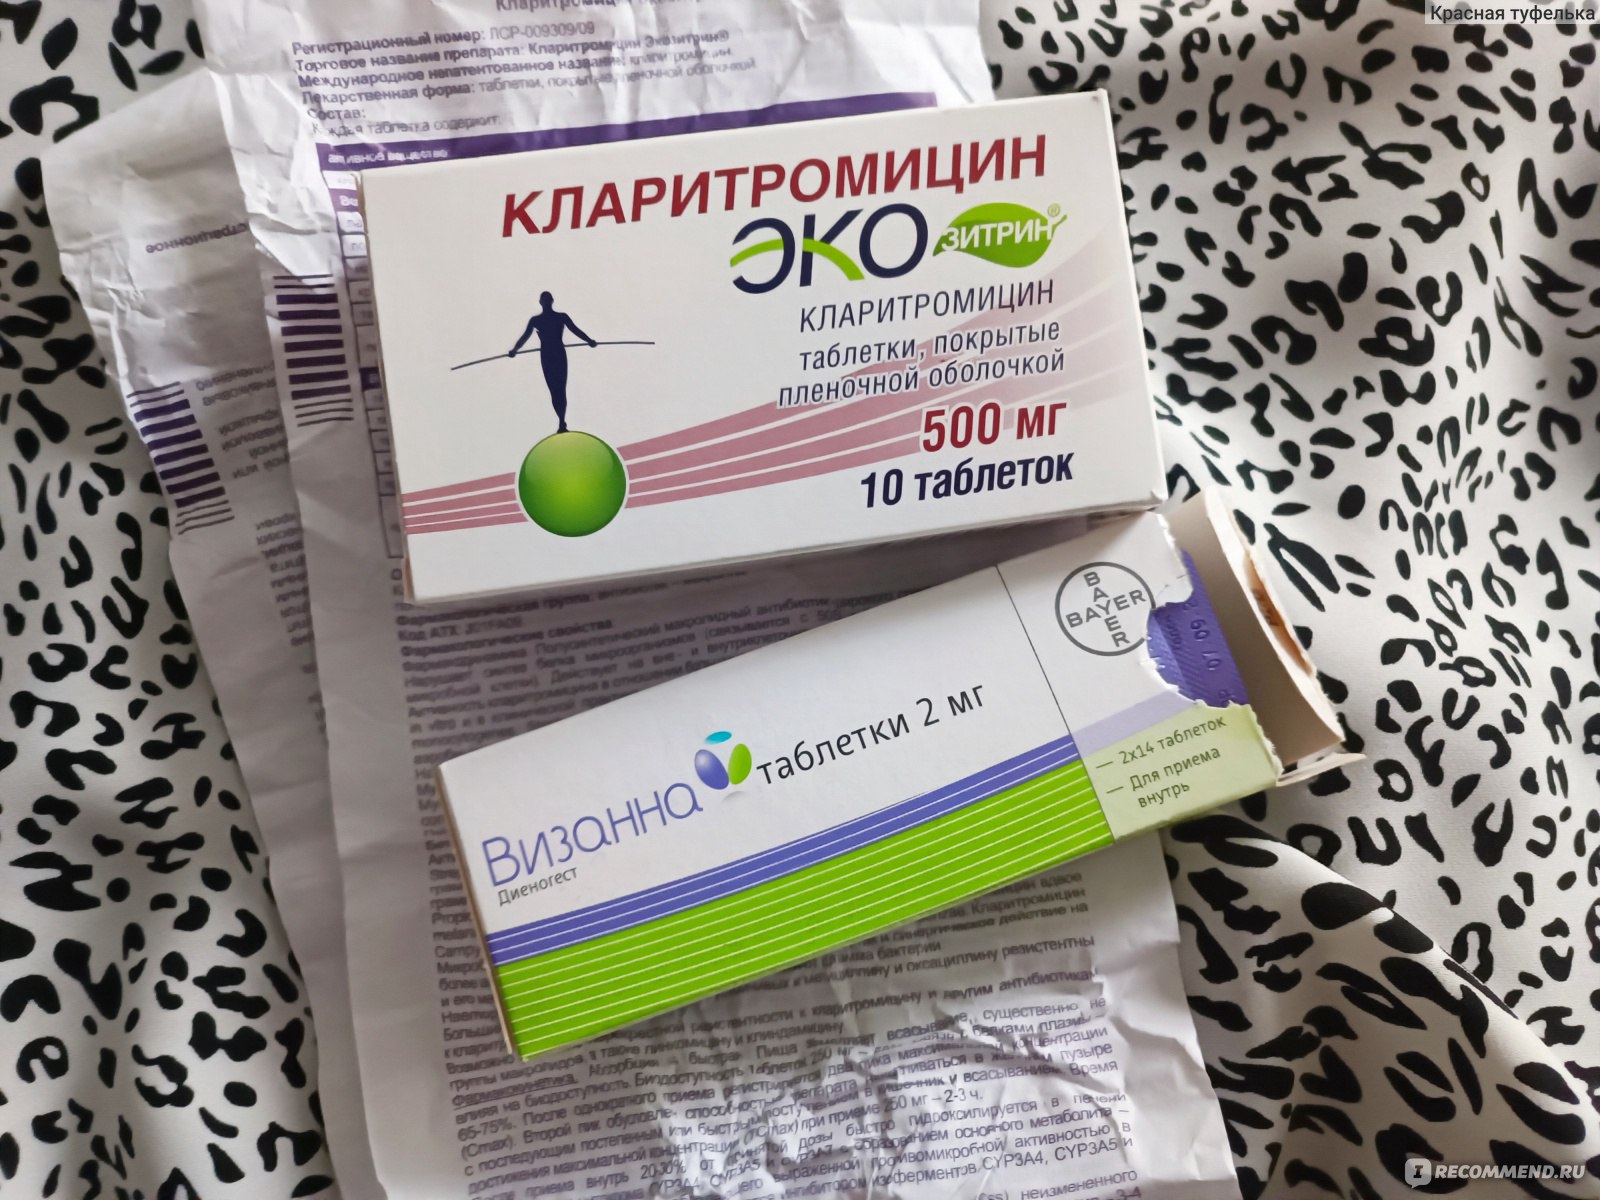 Антибиотик АВВА РУС Экозитрин Кларитромицин - «Острый фарингит в жару .